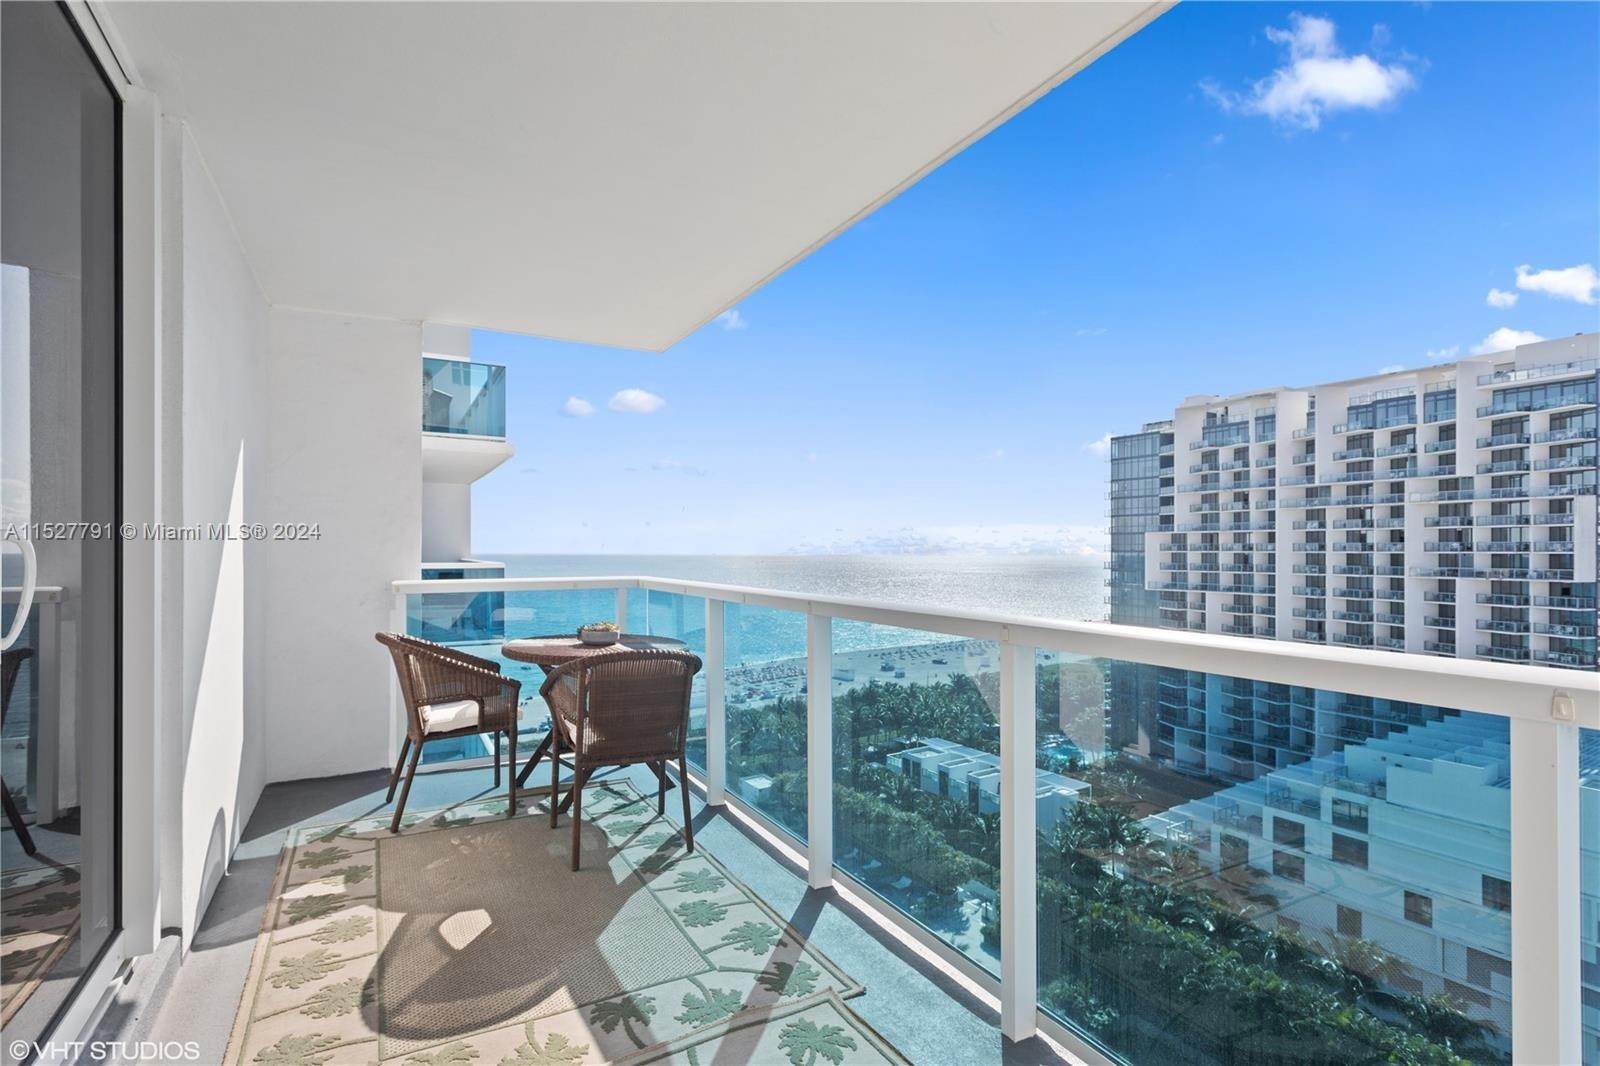 Condominium at Mid Beach, Miami Beach, FL 33139